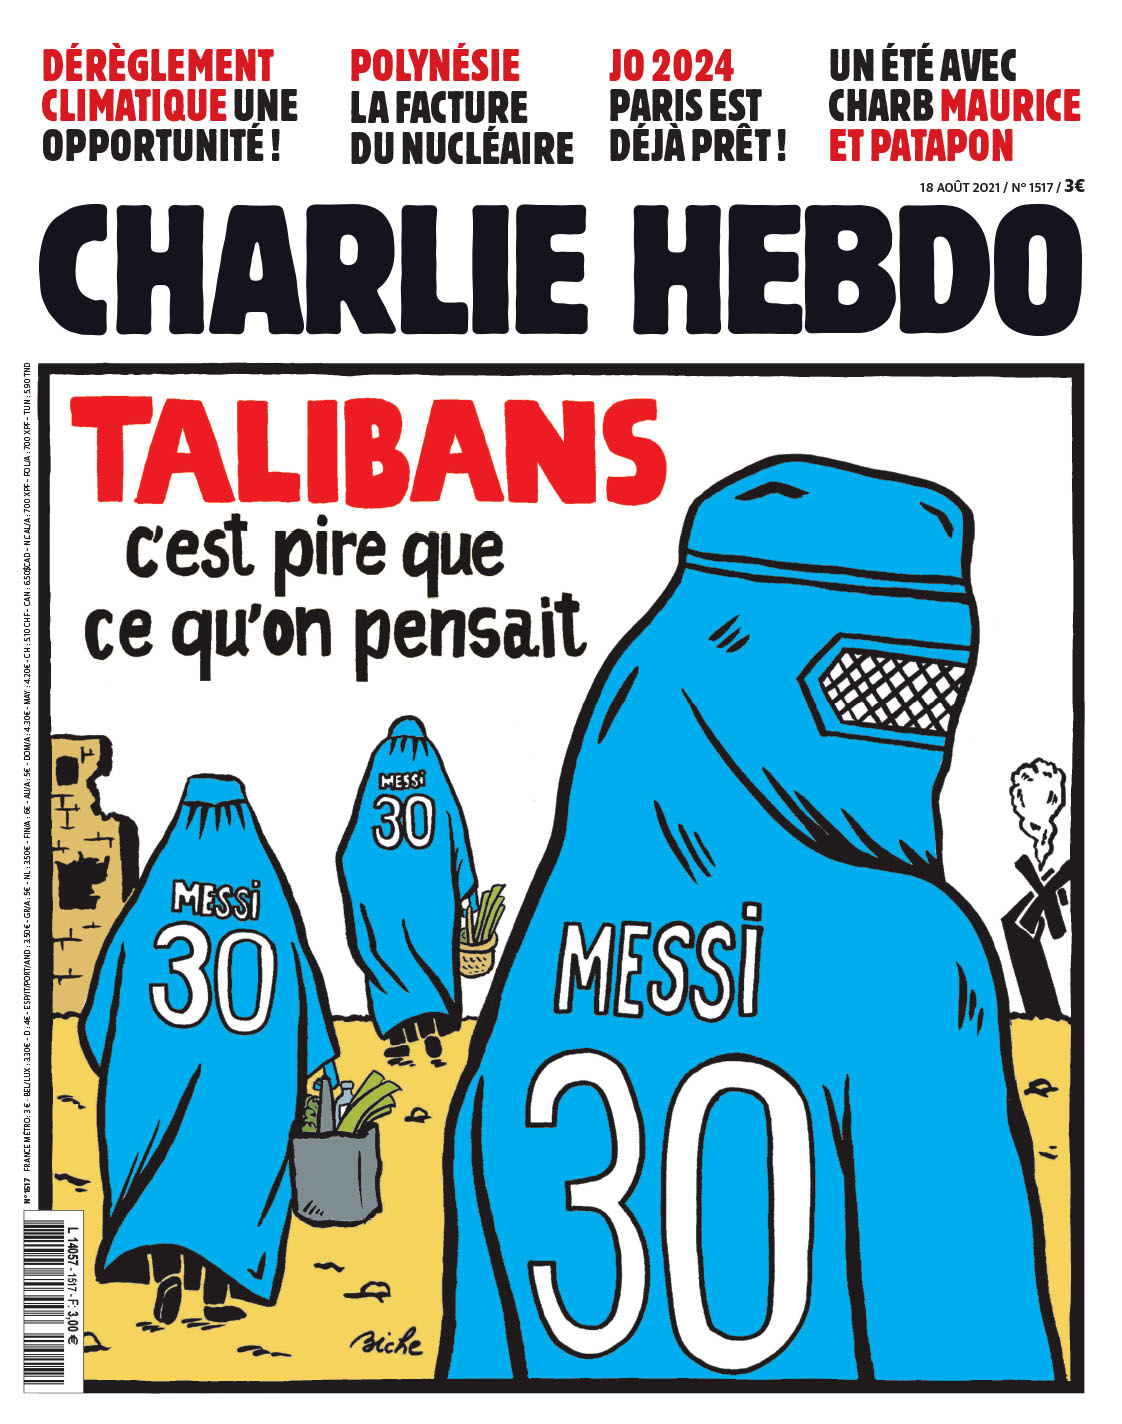 Charlie Hebdo вышел с карикатурой на Месси и талибов